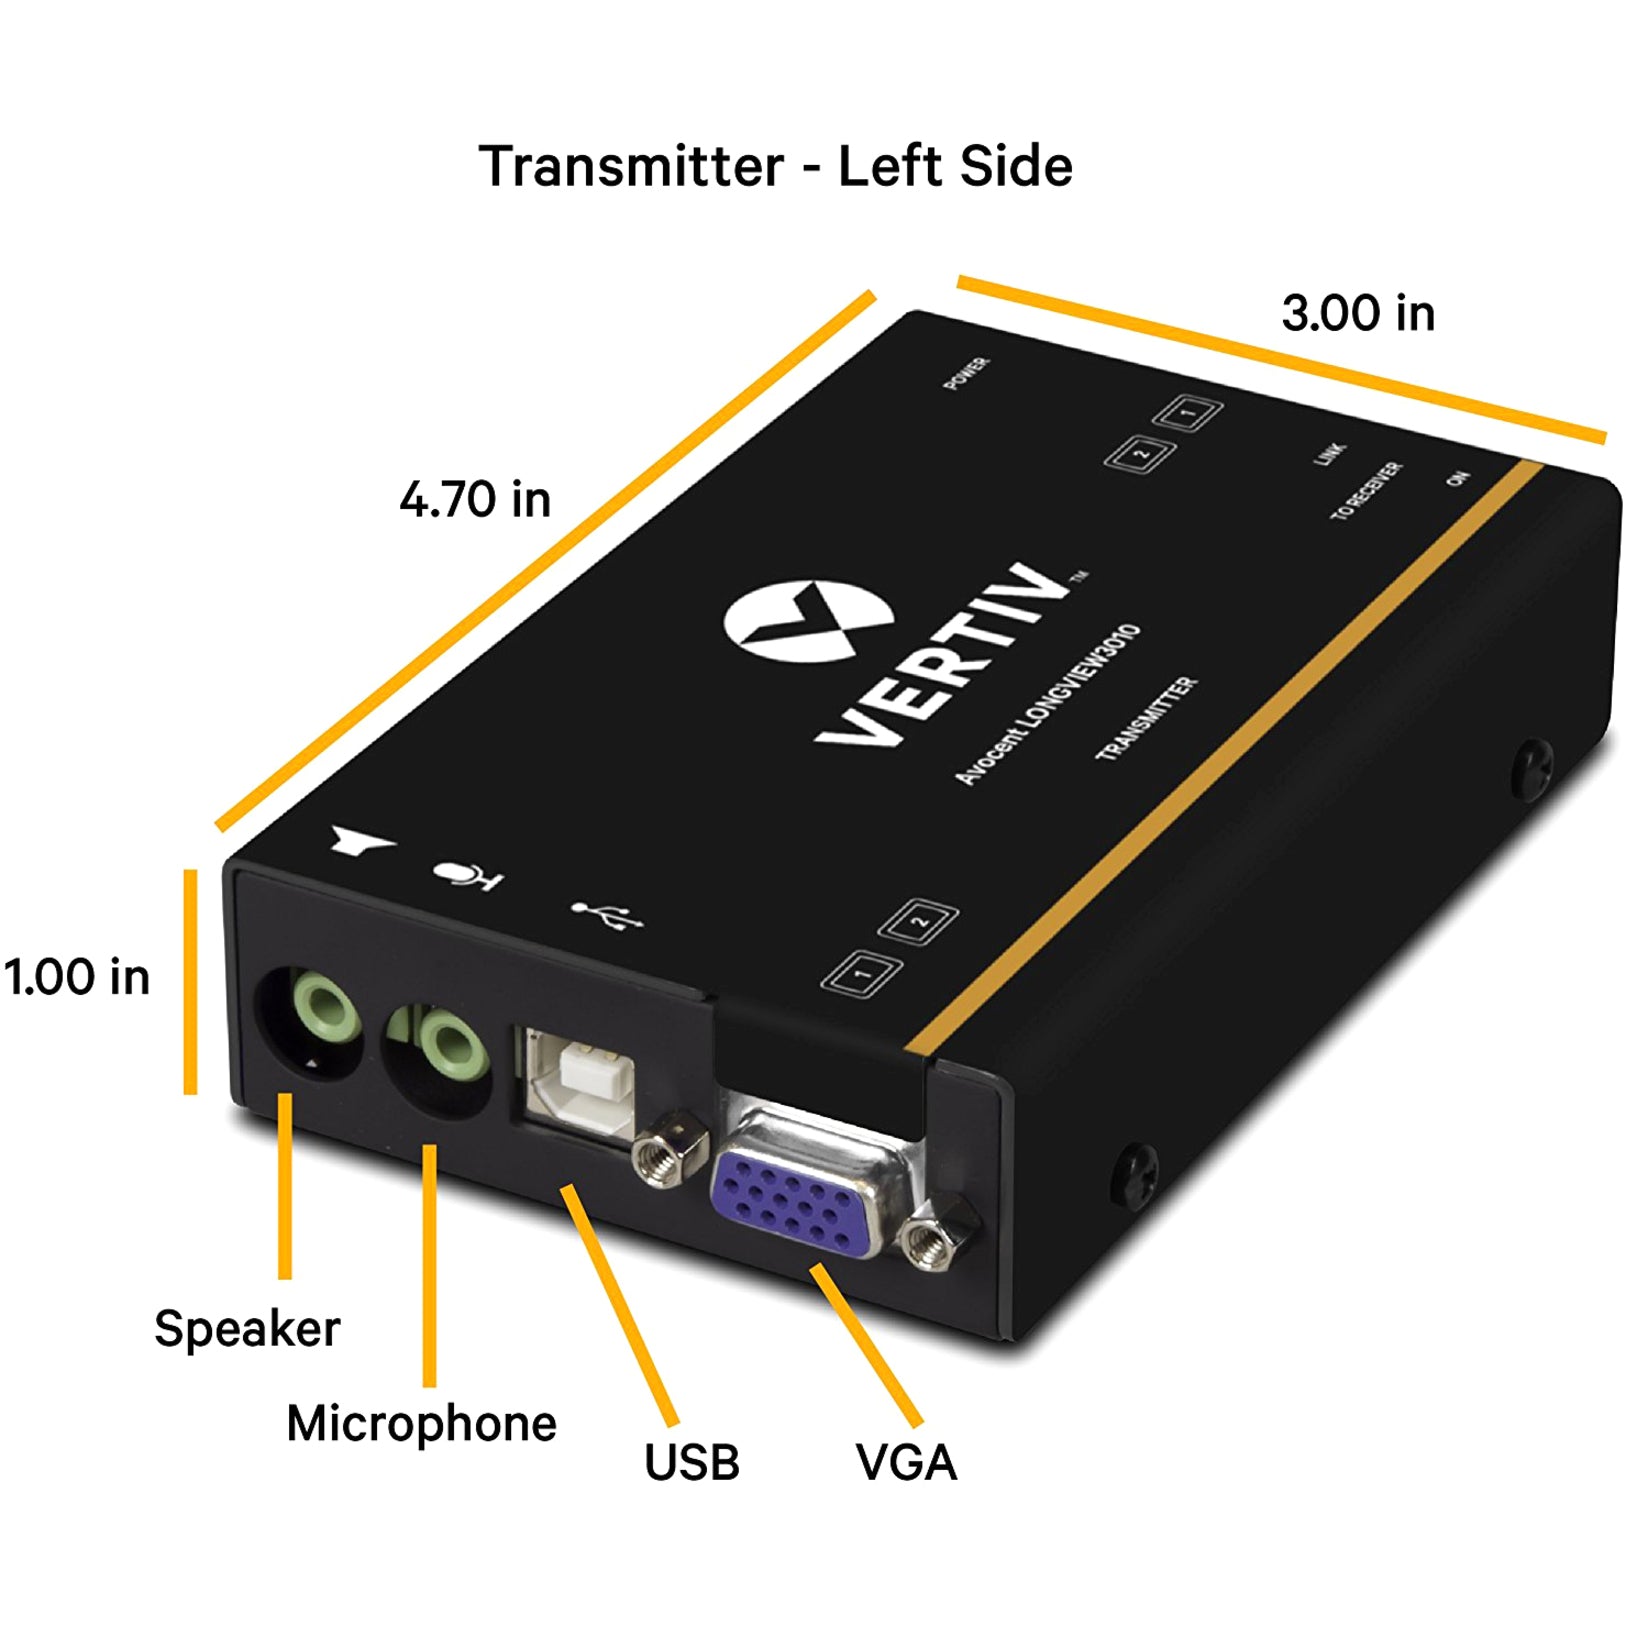 AVOCENT LV3010P-001 LV3010 Single VGA KVM Extender, High Quality Kit with Receiver & Transmitter